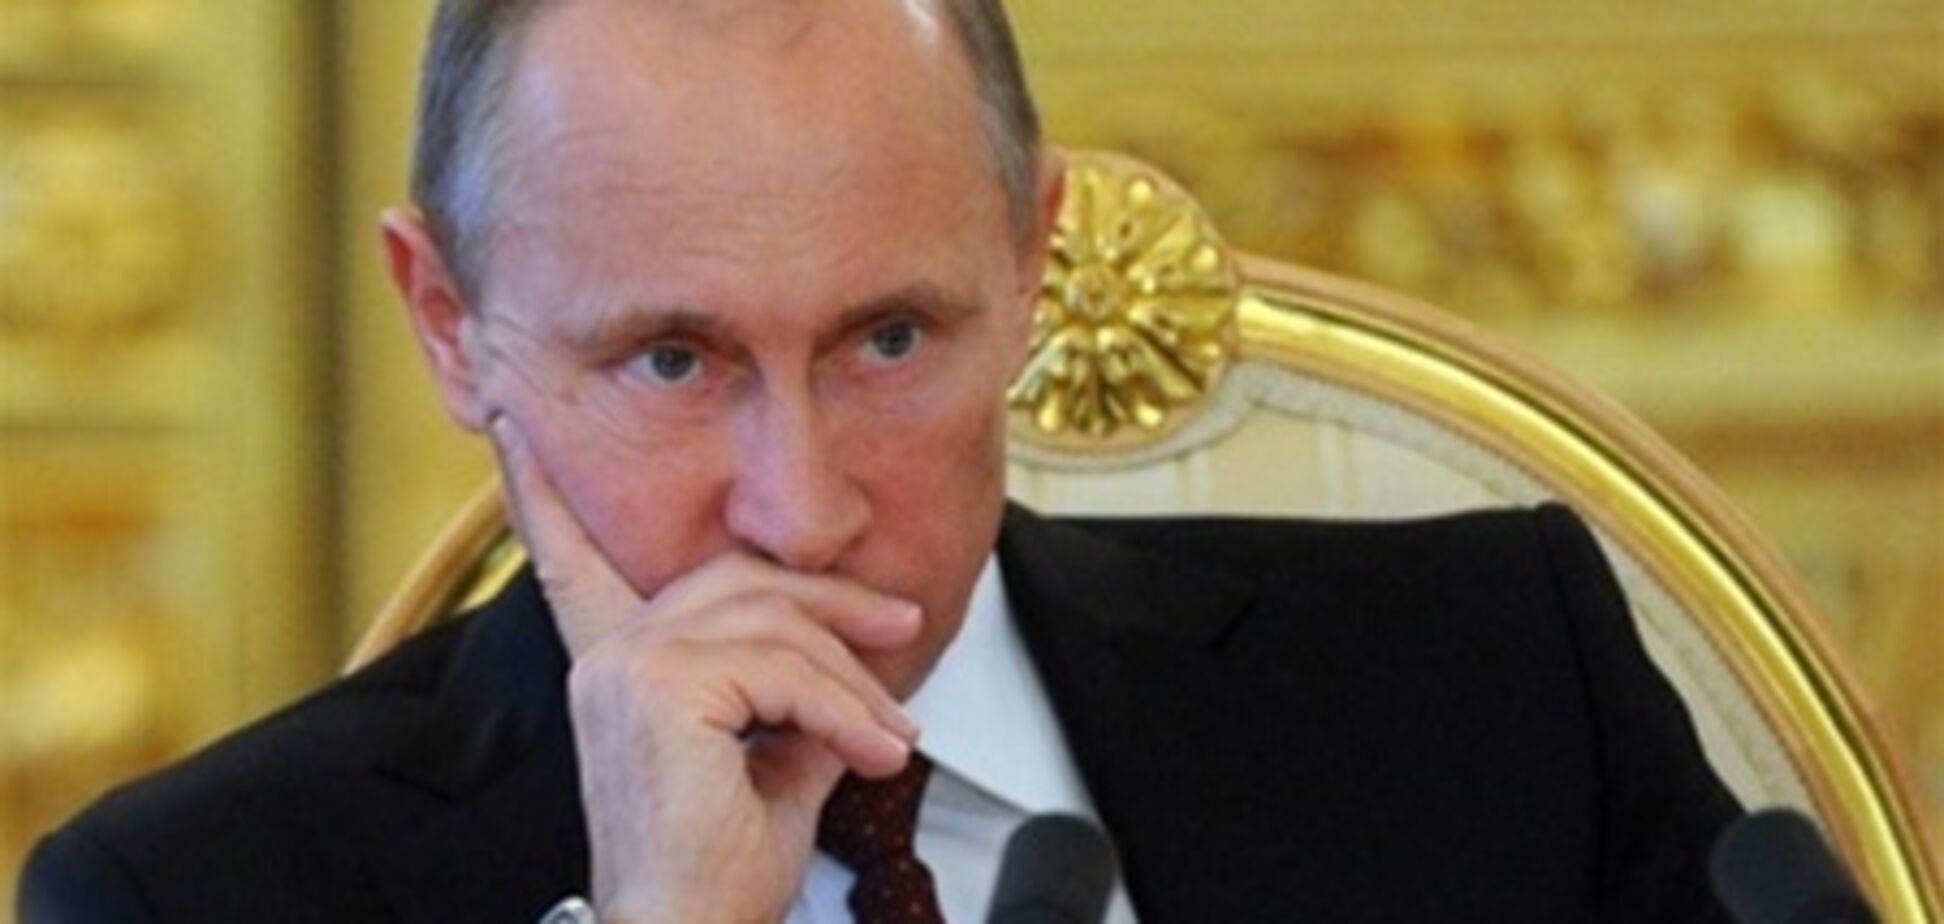 СМИ: Путин контролирует оппонентов, обвиняя их в коррупции